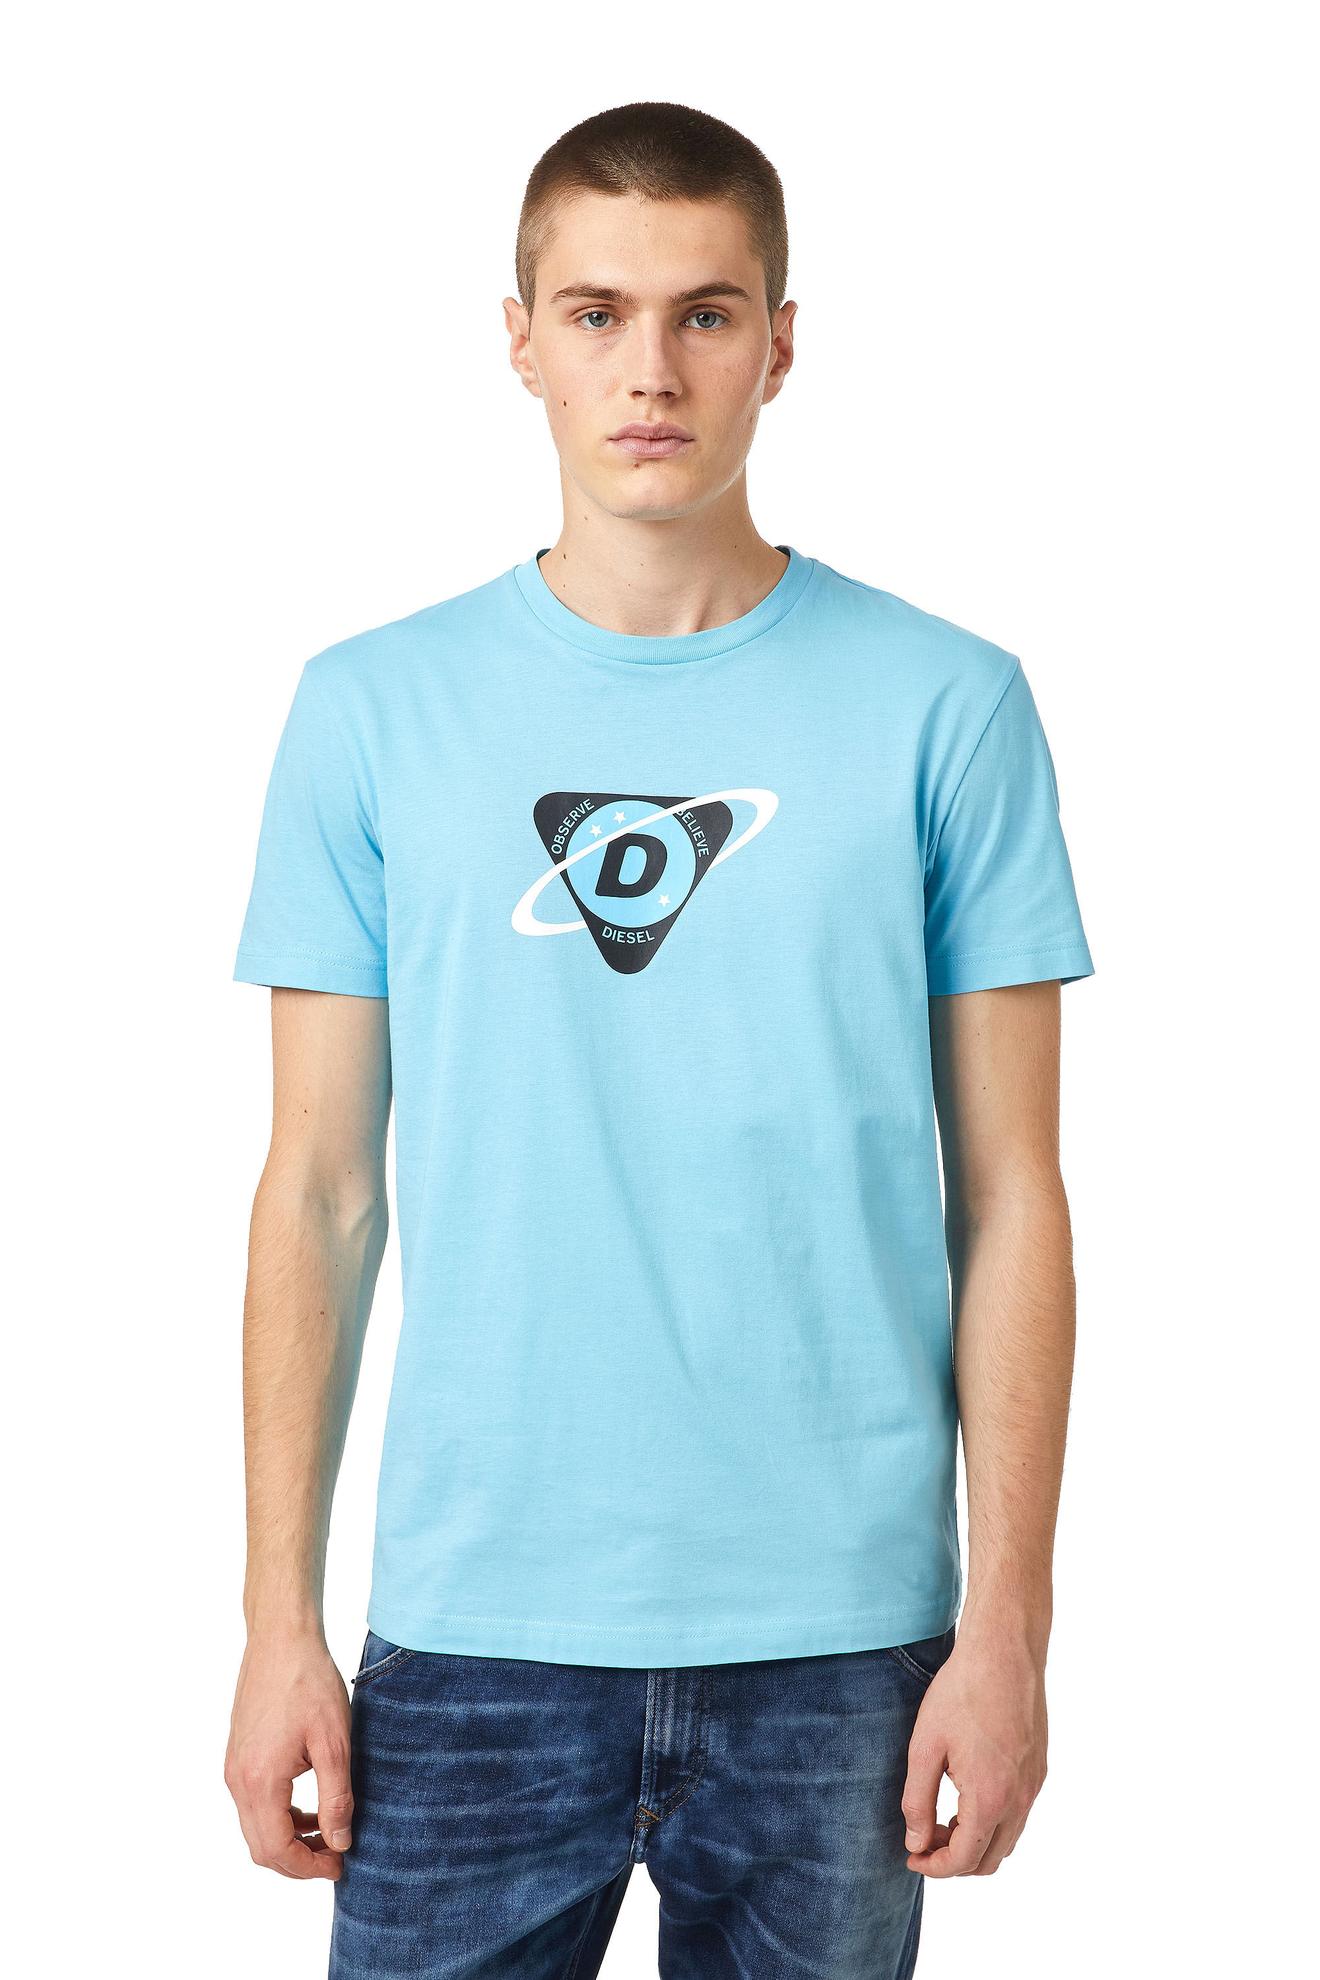 Oferta de Camiseta Para Hombre T Diegos K24 por $215920 en Diesel